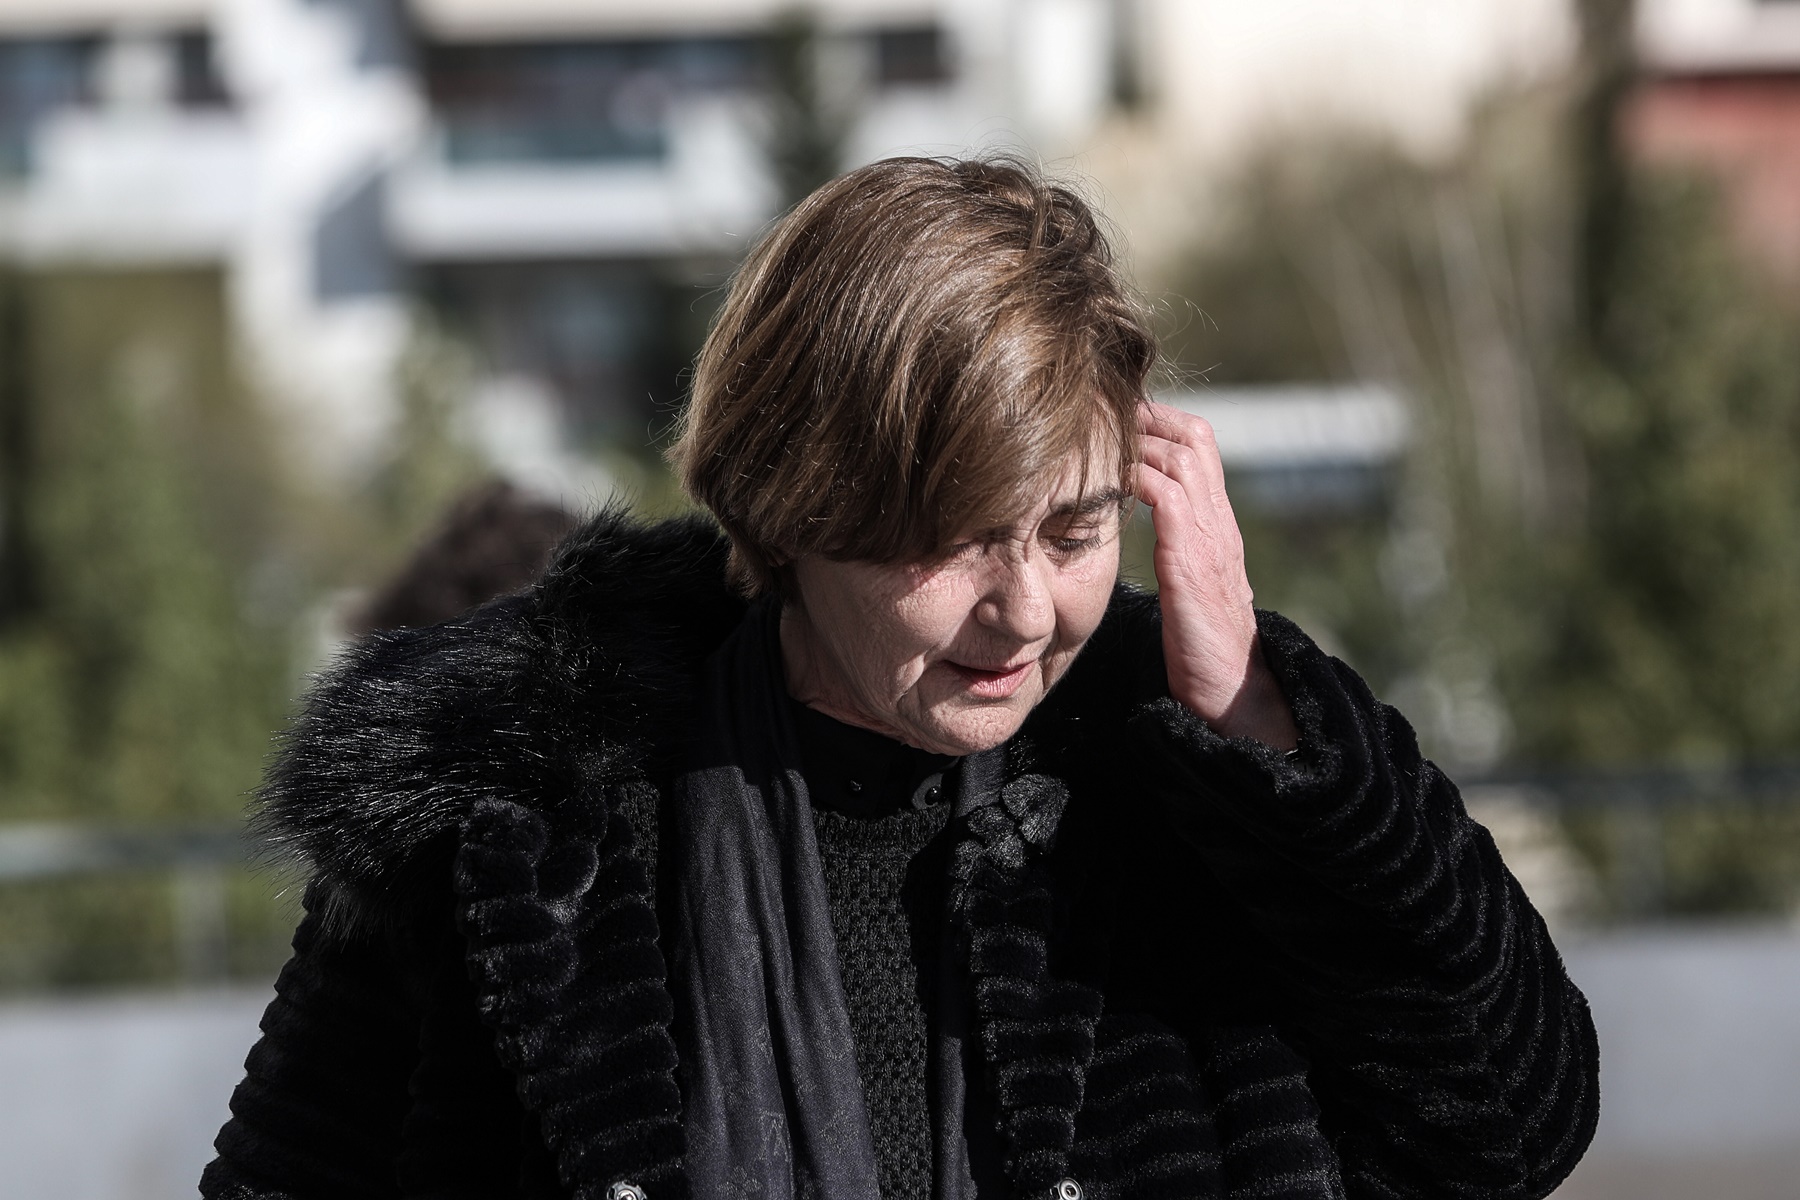 Δίκη Τοπαλούδη: Το ξέσπασμα για τη διακοπή – “Γουρούνια απάνθρωπα”, φώναξε η μητέρα